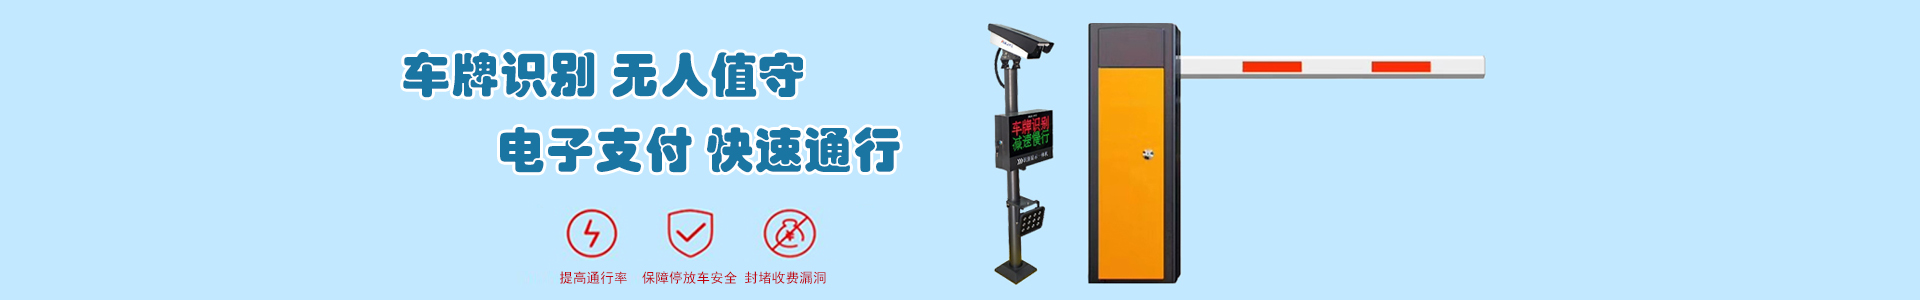 监控6-监控系统-上海帆蓝智能科技有限公司-车辆车牌识别|监控摄像头|道闸|小区门禁|人脸识别|伸缩门|